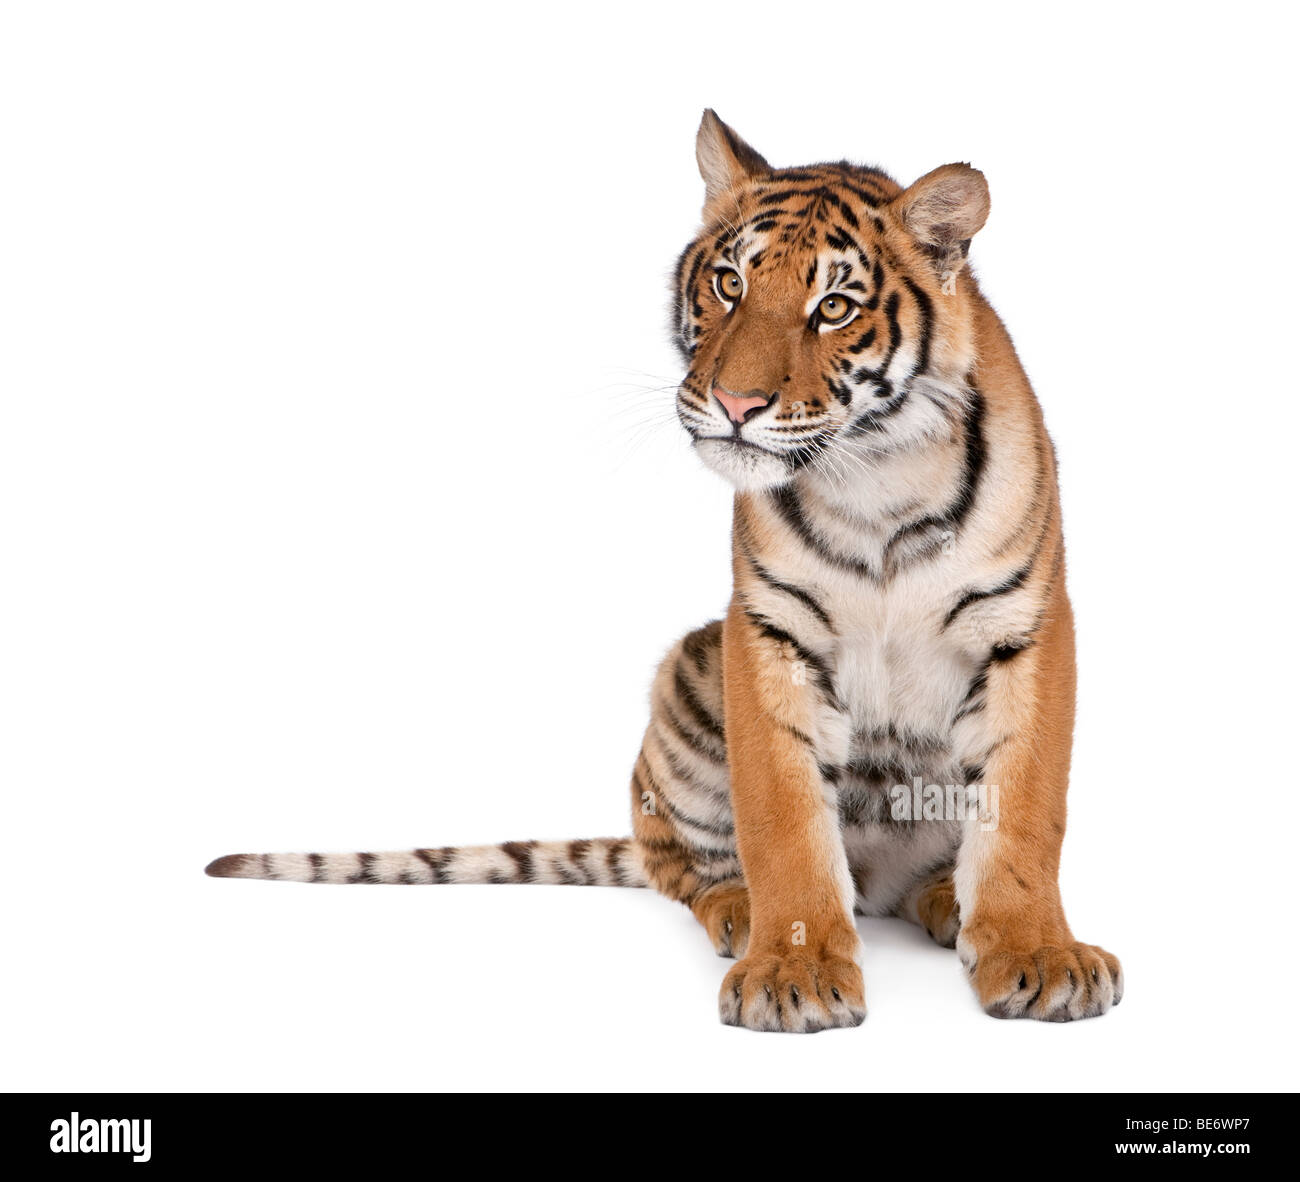 Retrato de Tigre de Bengala, Panthera tigris tigris, 1 año de edad, sentado delante de un fondo blanco, Foto de estudio Foto de stock